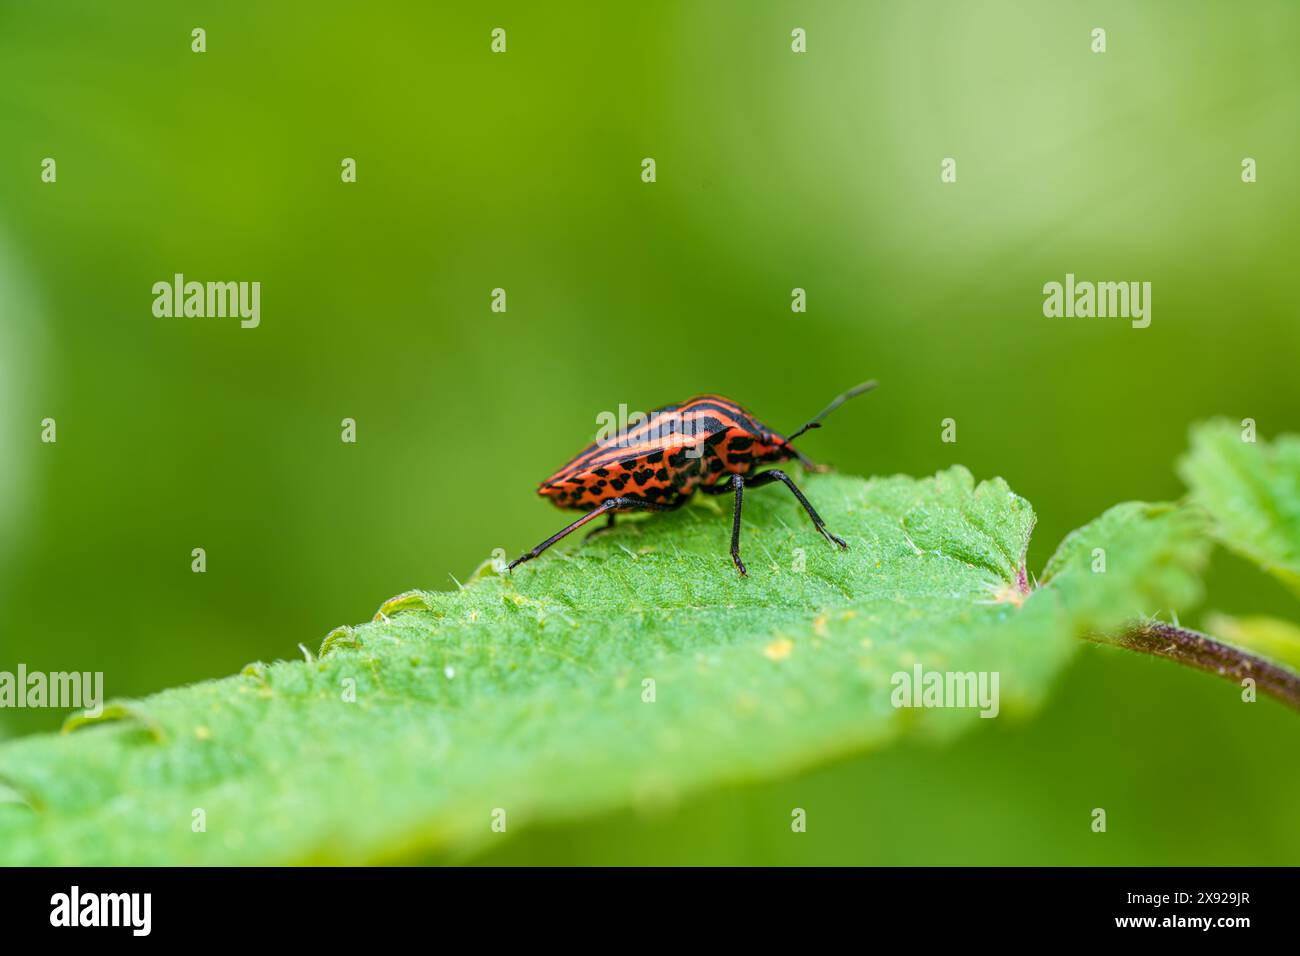 Un petit coléoptère rouge et noir est perché sur une feuille verte vibrante, représentant une vue rapprochée d'un insecte terrestre dans son habitat naturel Banque D'Images